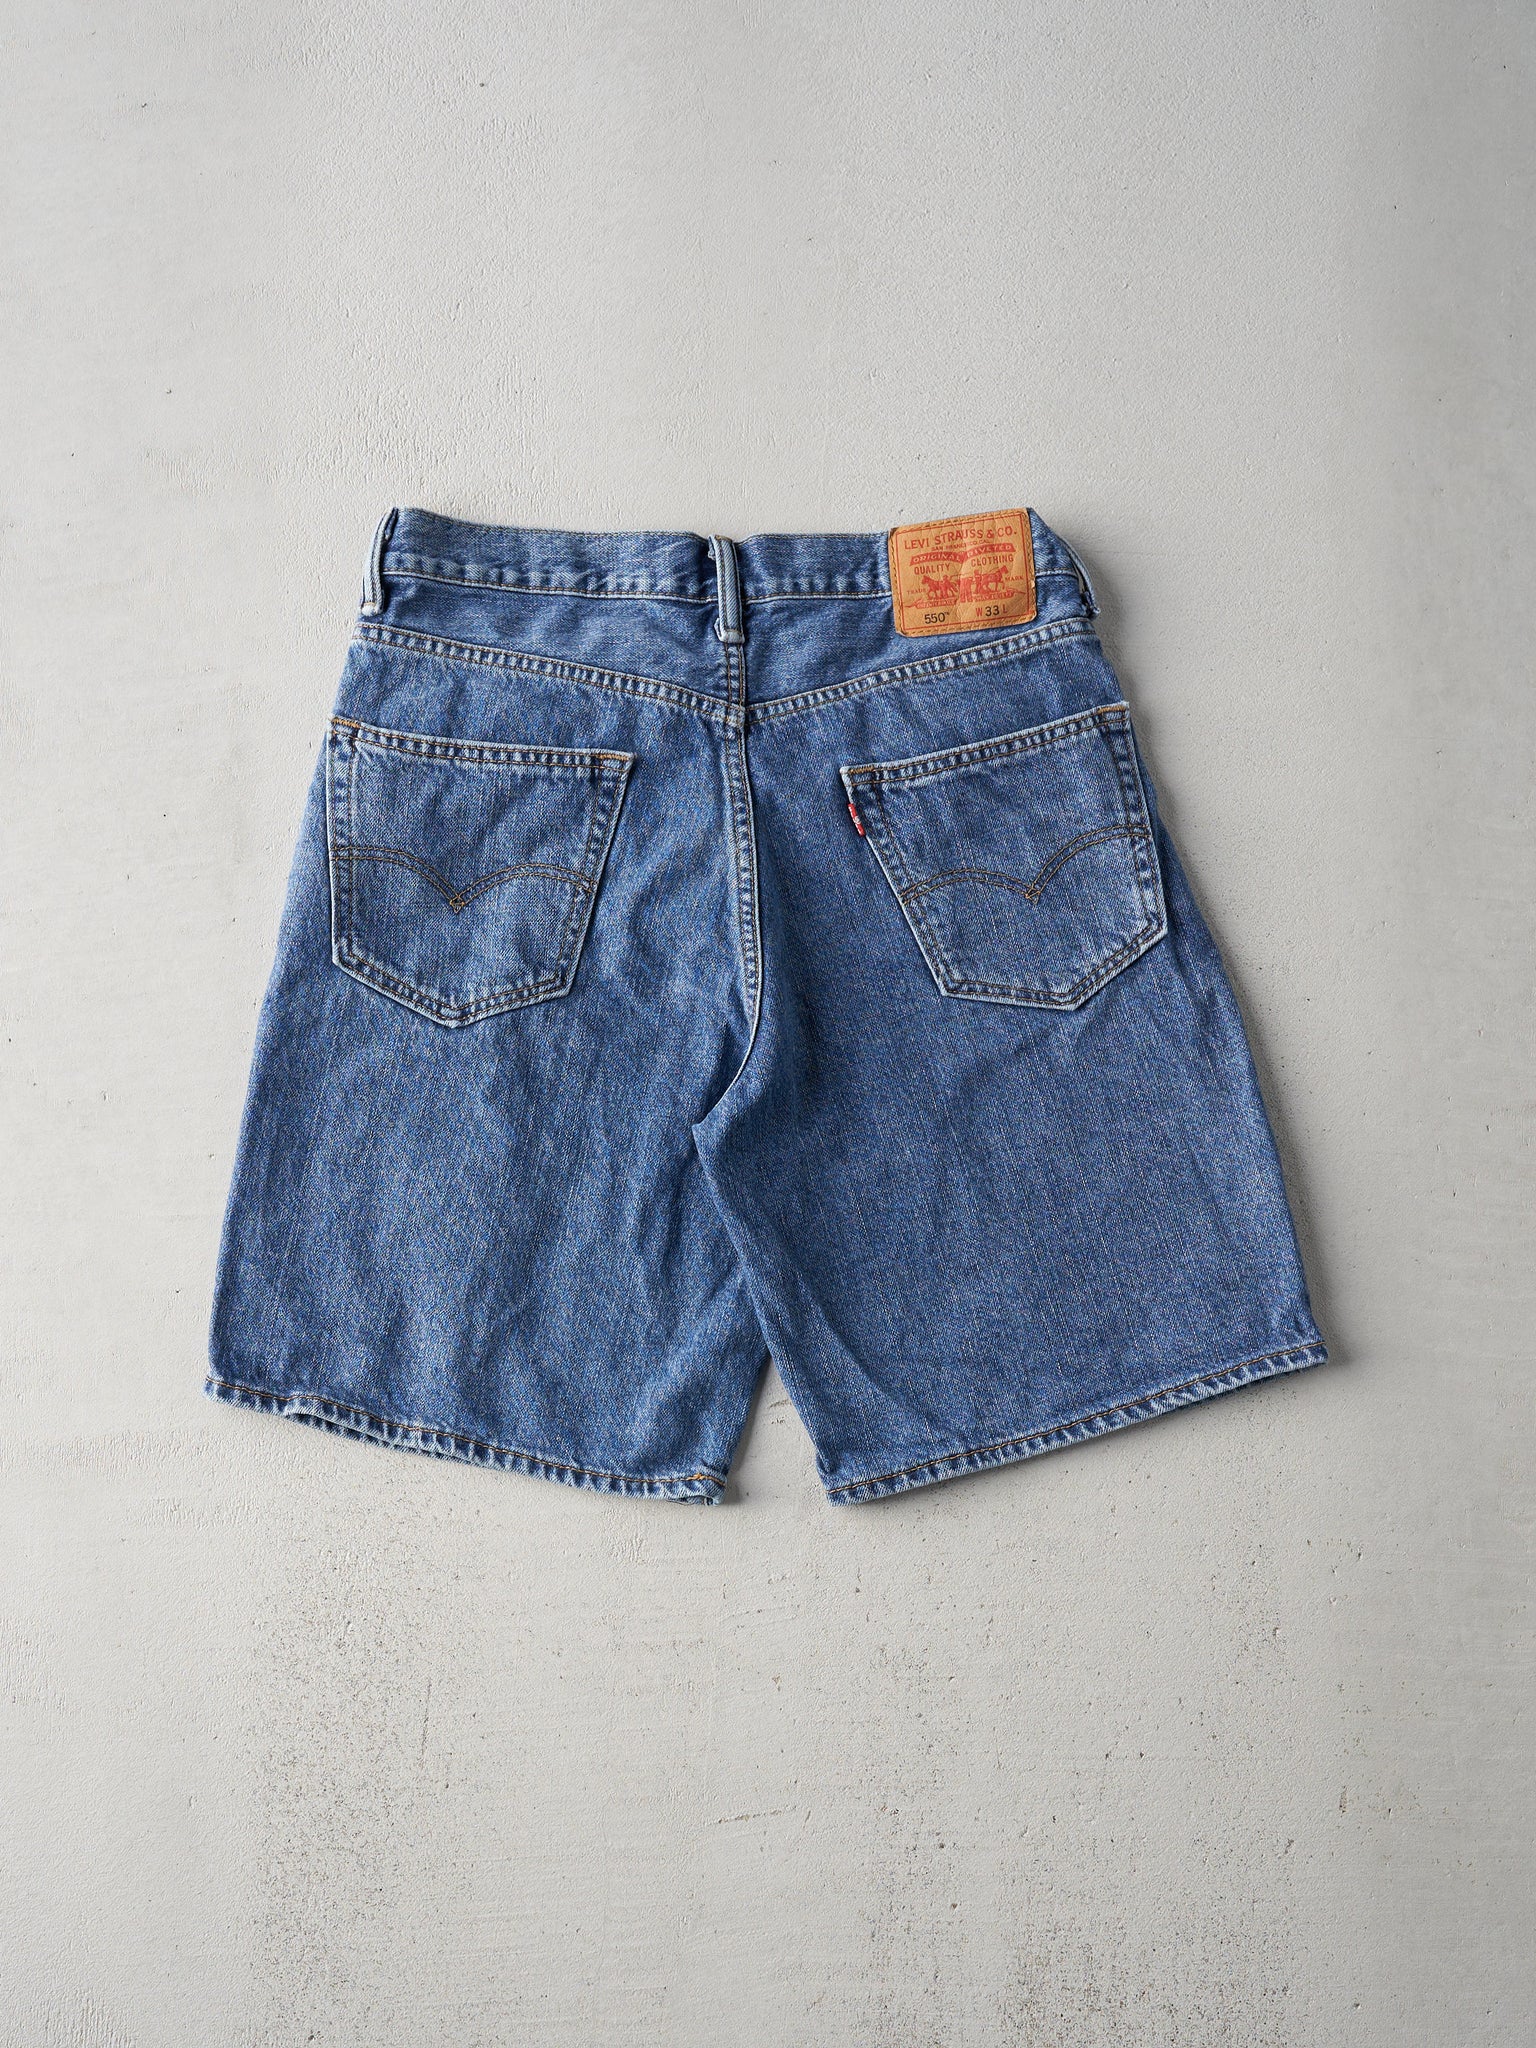 Vintage 90s Mid Wash Levis 550 Short (33x9)